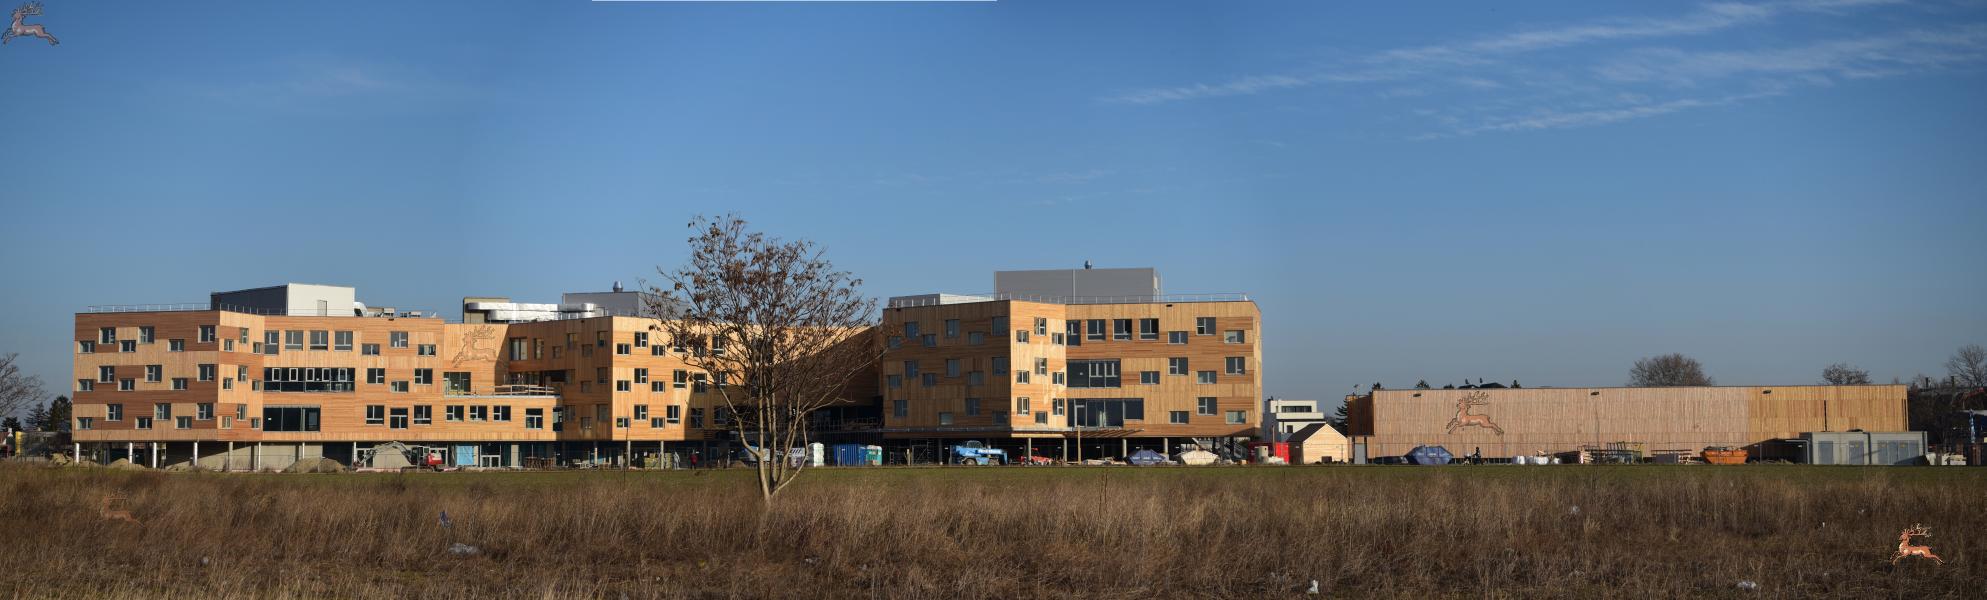 Panorama Campus Berresgasse